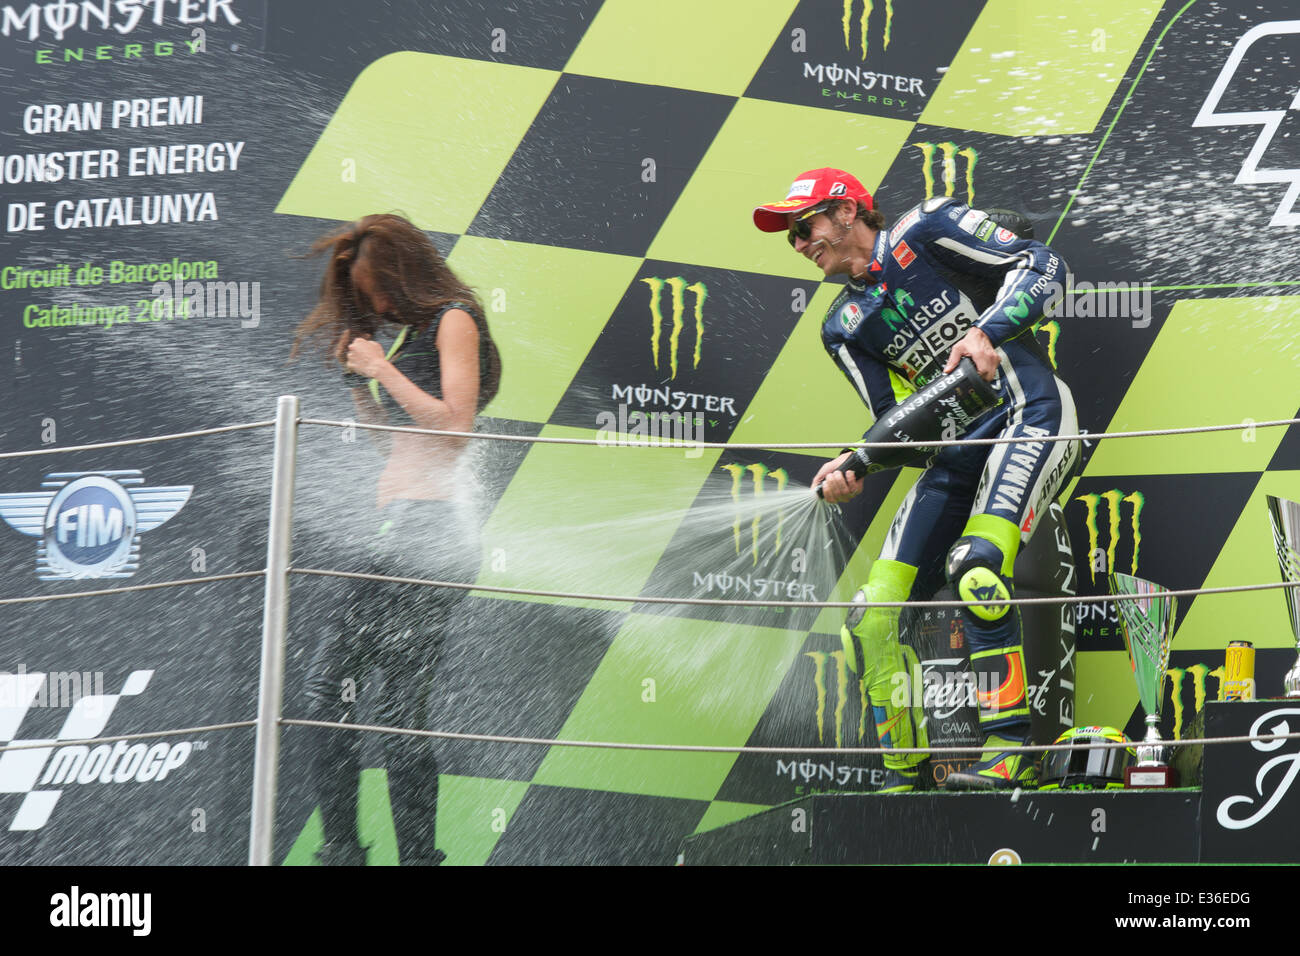 Monster Energy Grid Mädchen von dem Monster Energy Gran Premi De Catalunya bekommt von Valentino Rossi mit Champagner besprüht. Stockfoto